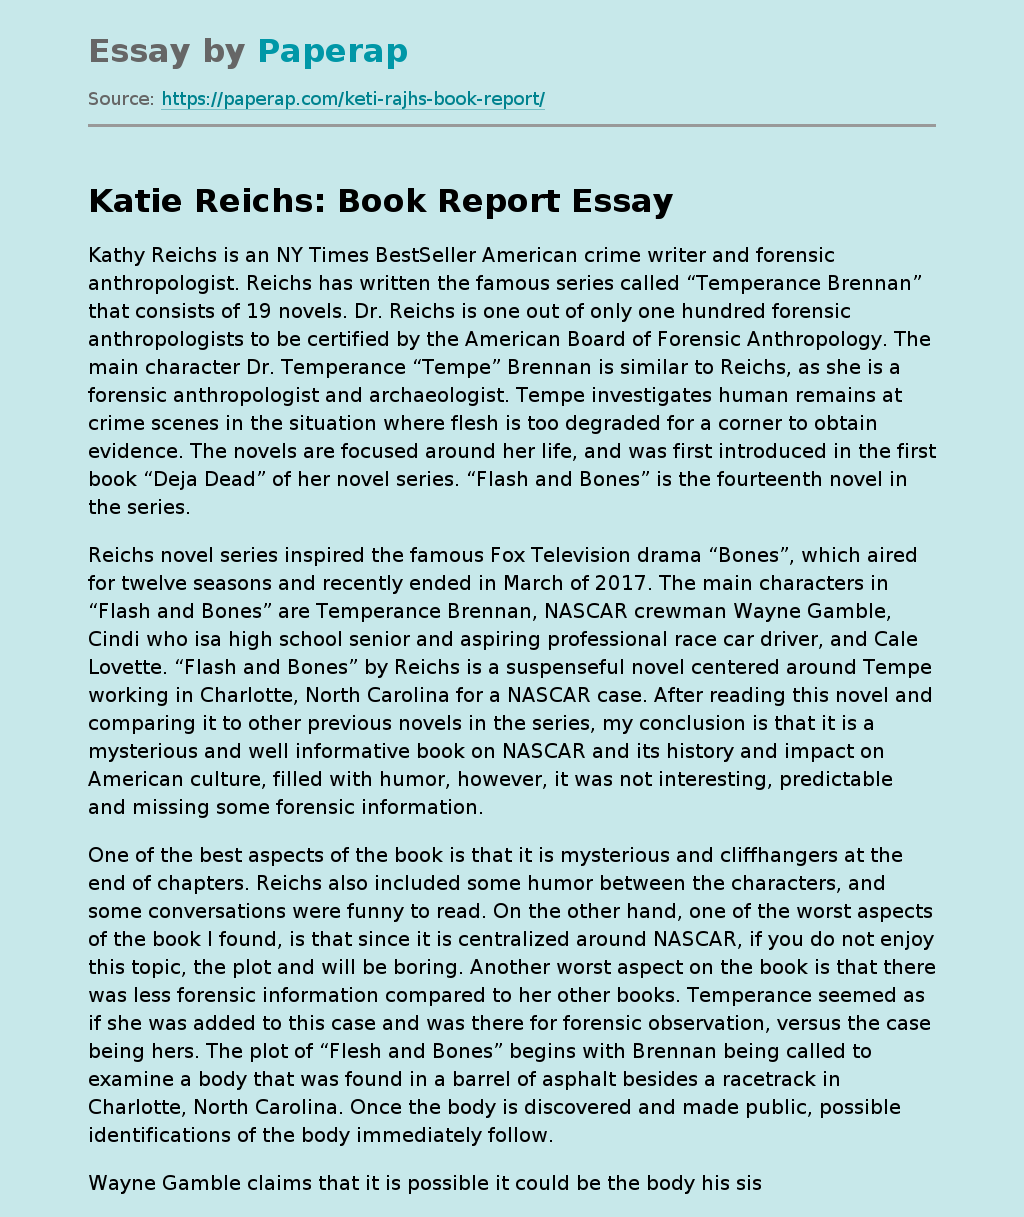 Katie Reichs: Book Report